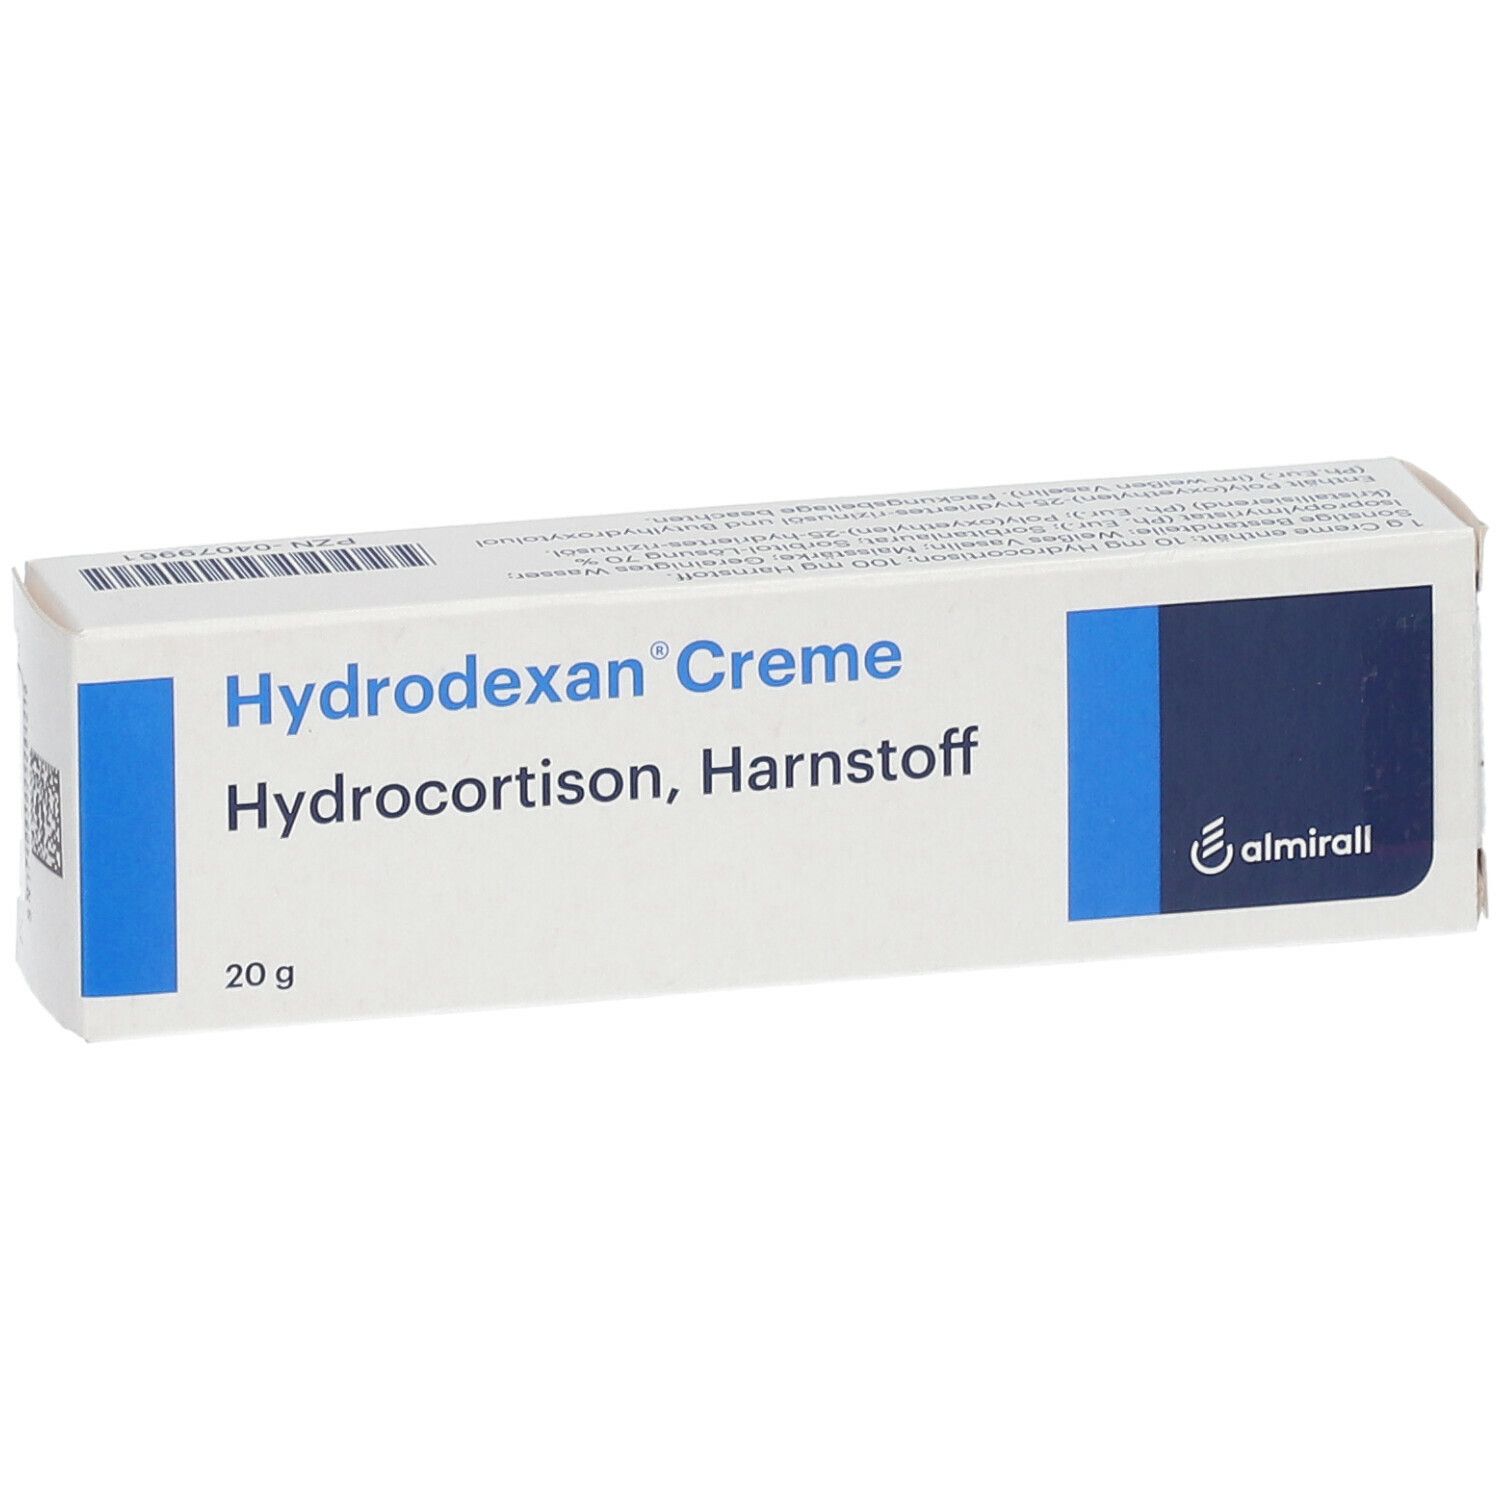 Hydrodexan® Creme